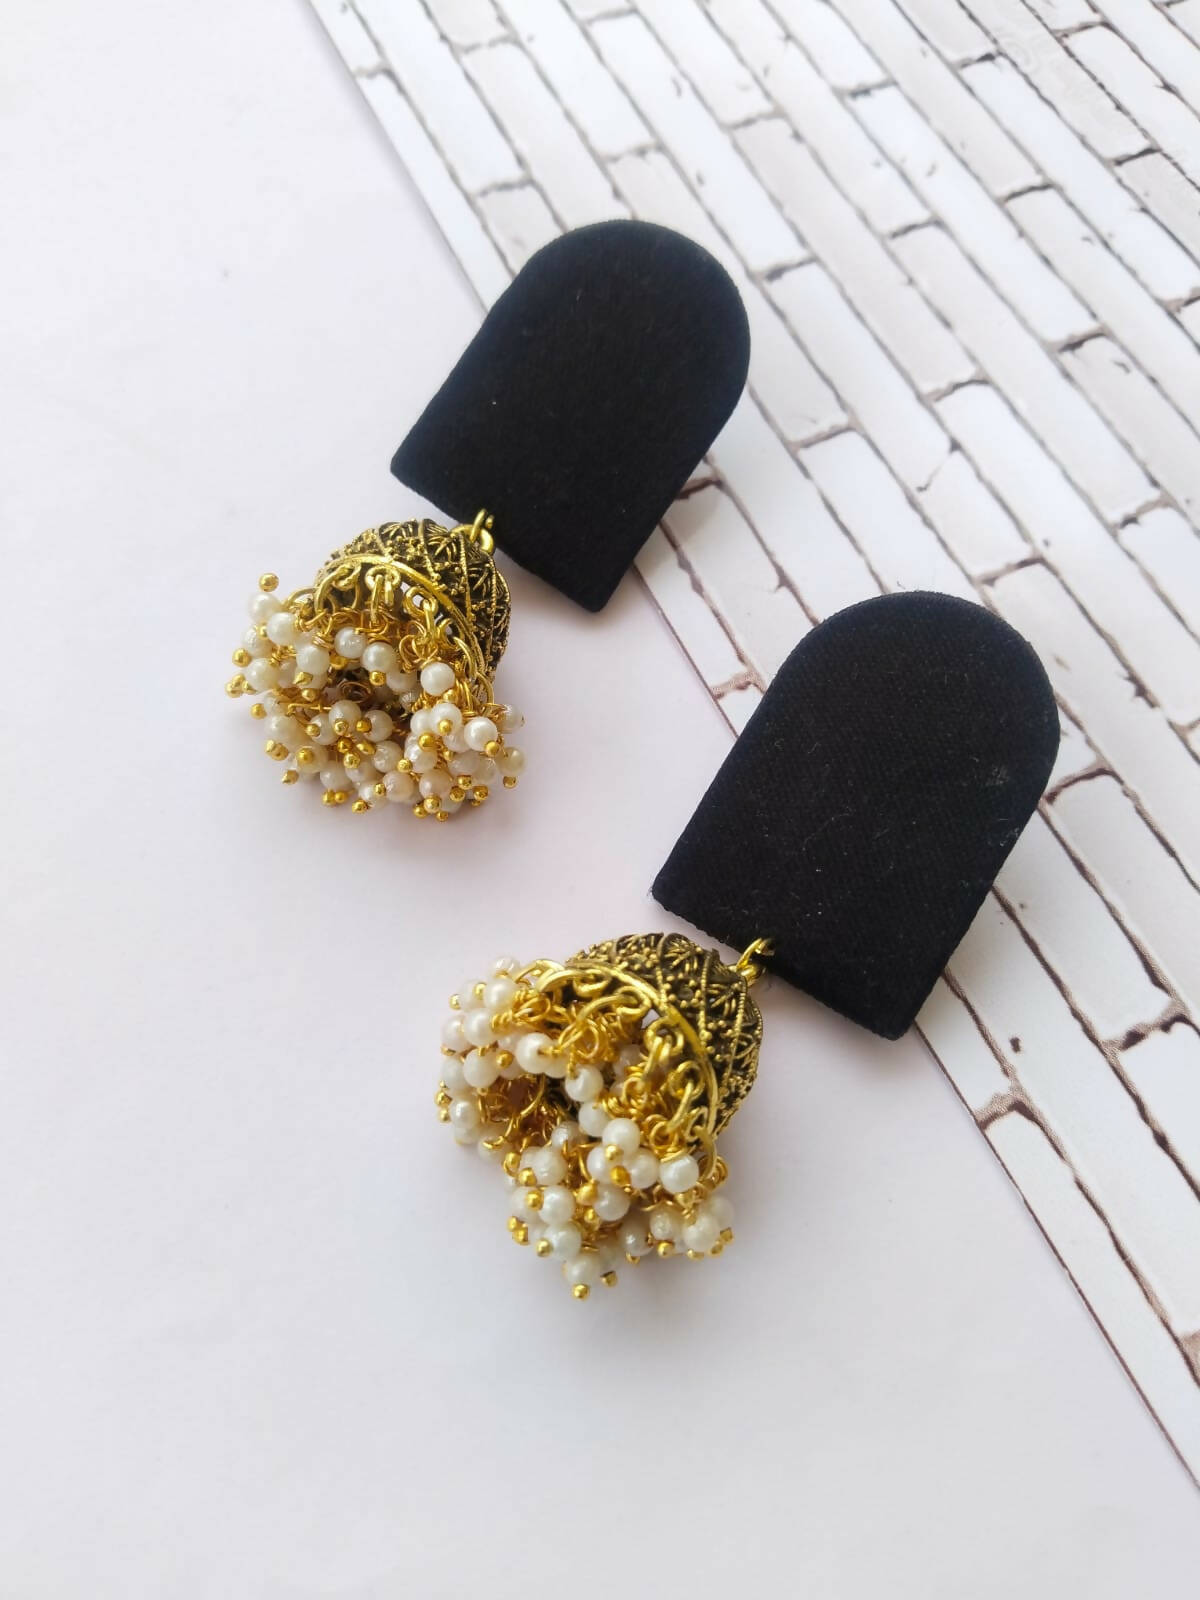 Plain Black Earrings with Golden Bottom